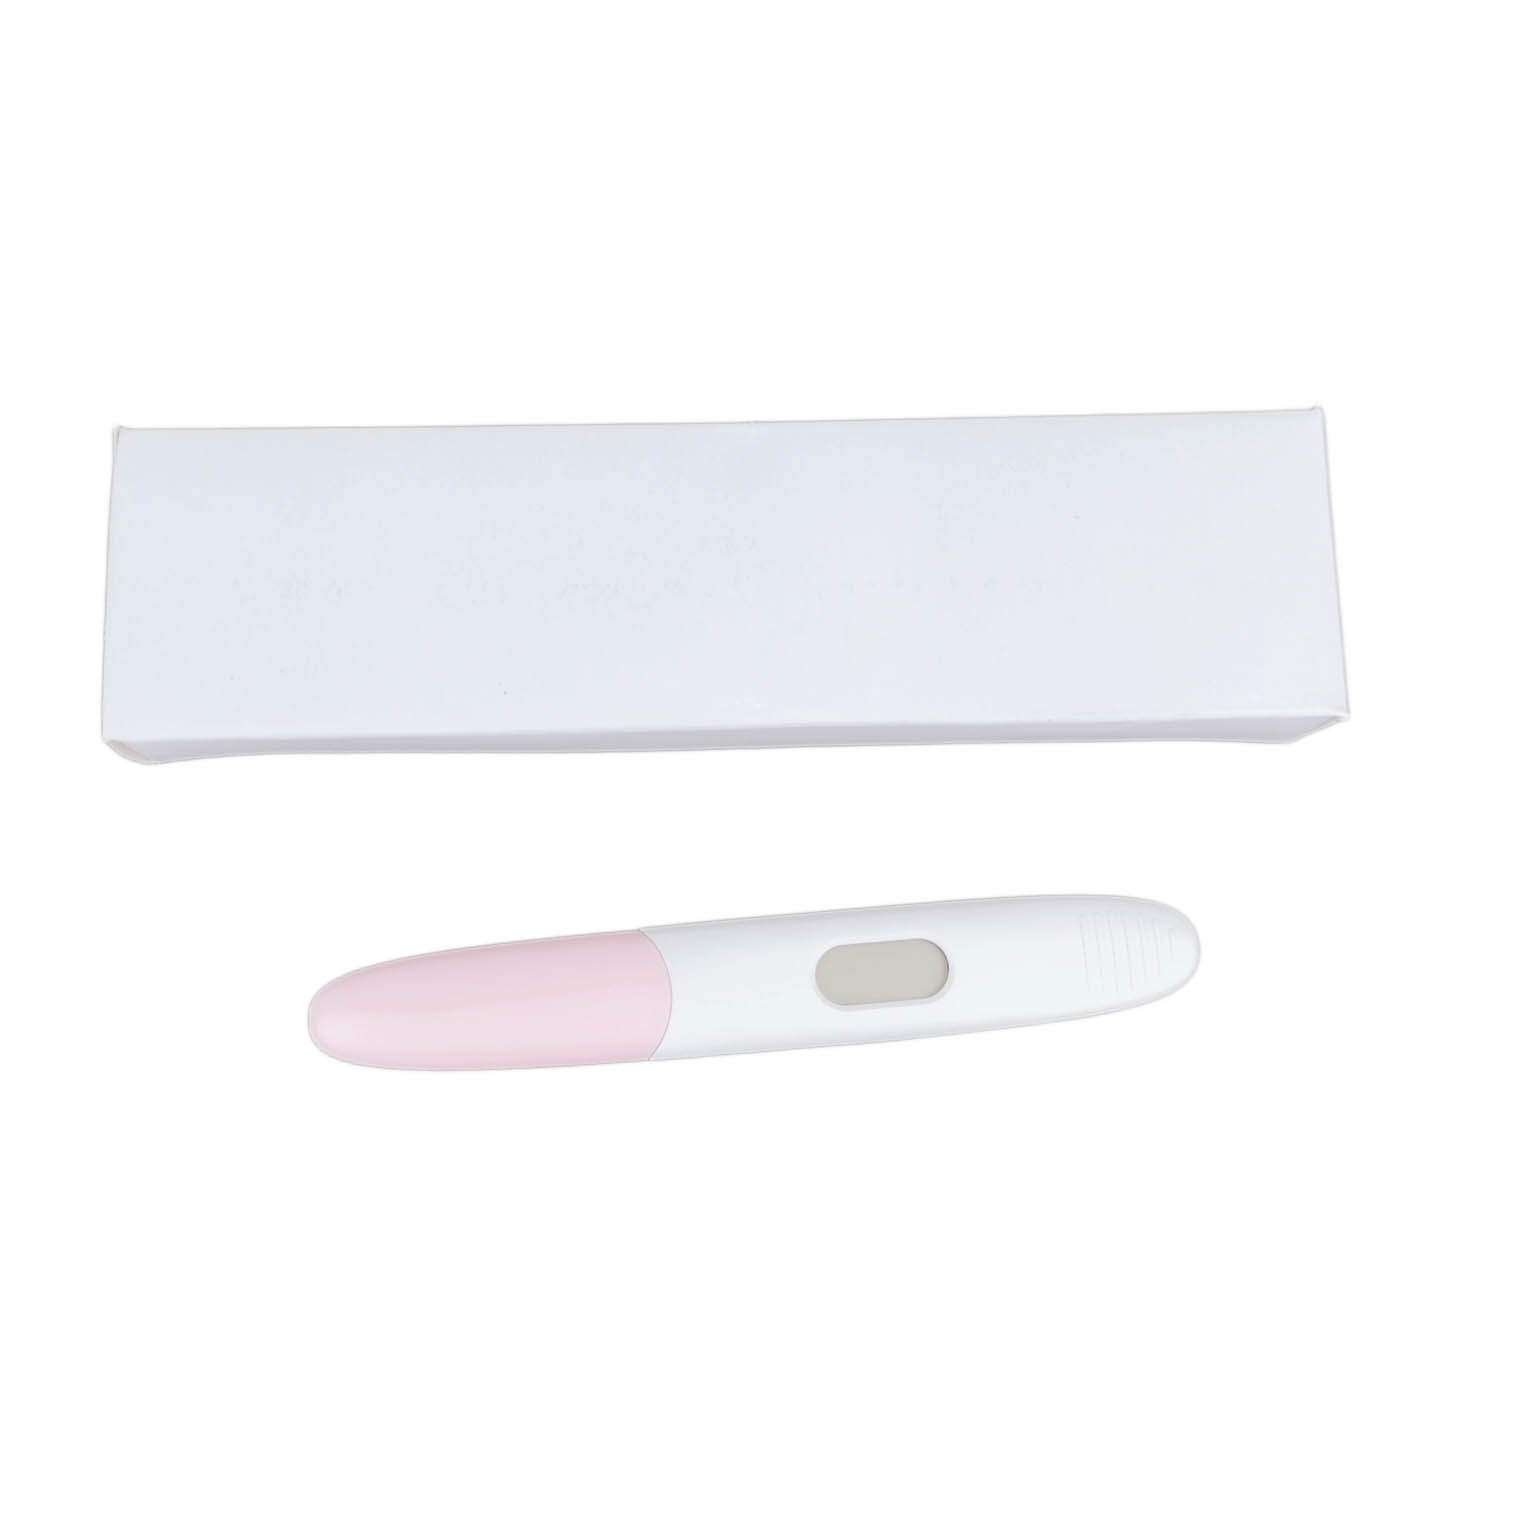 การทดสอบปัสสาวะการตั้งครรภ์ HCG